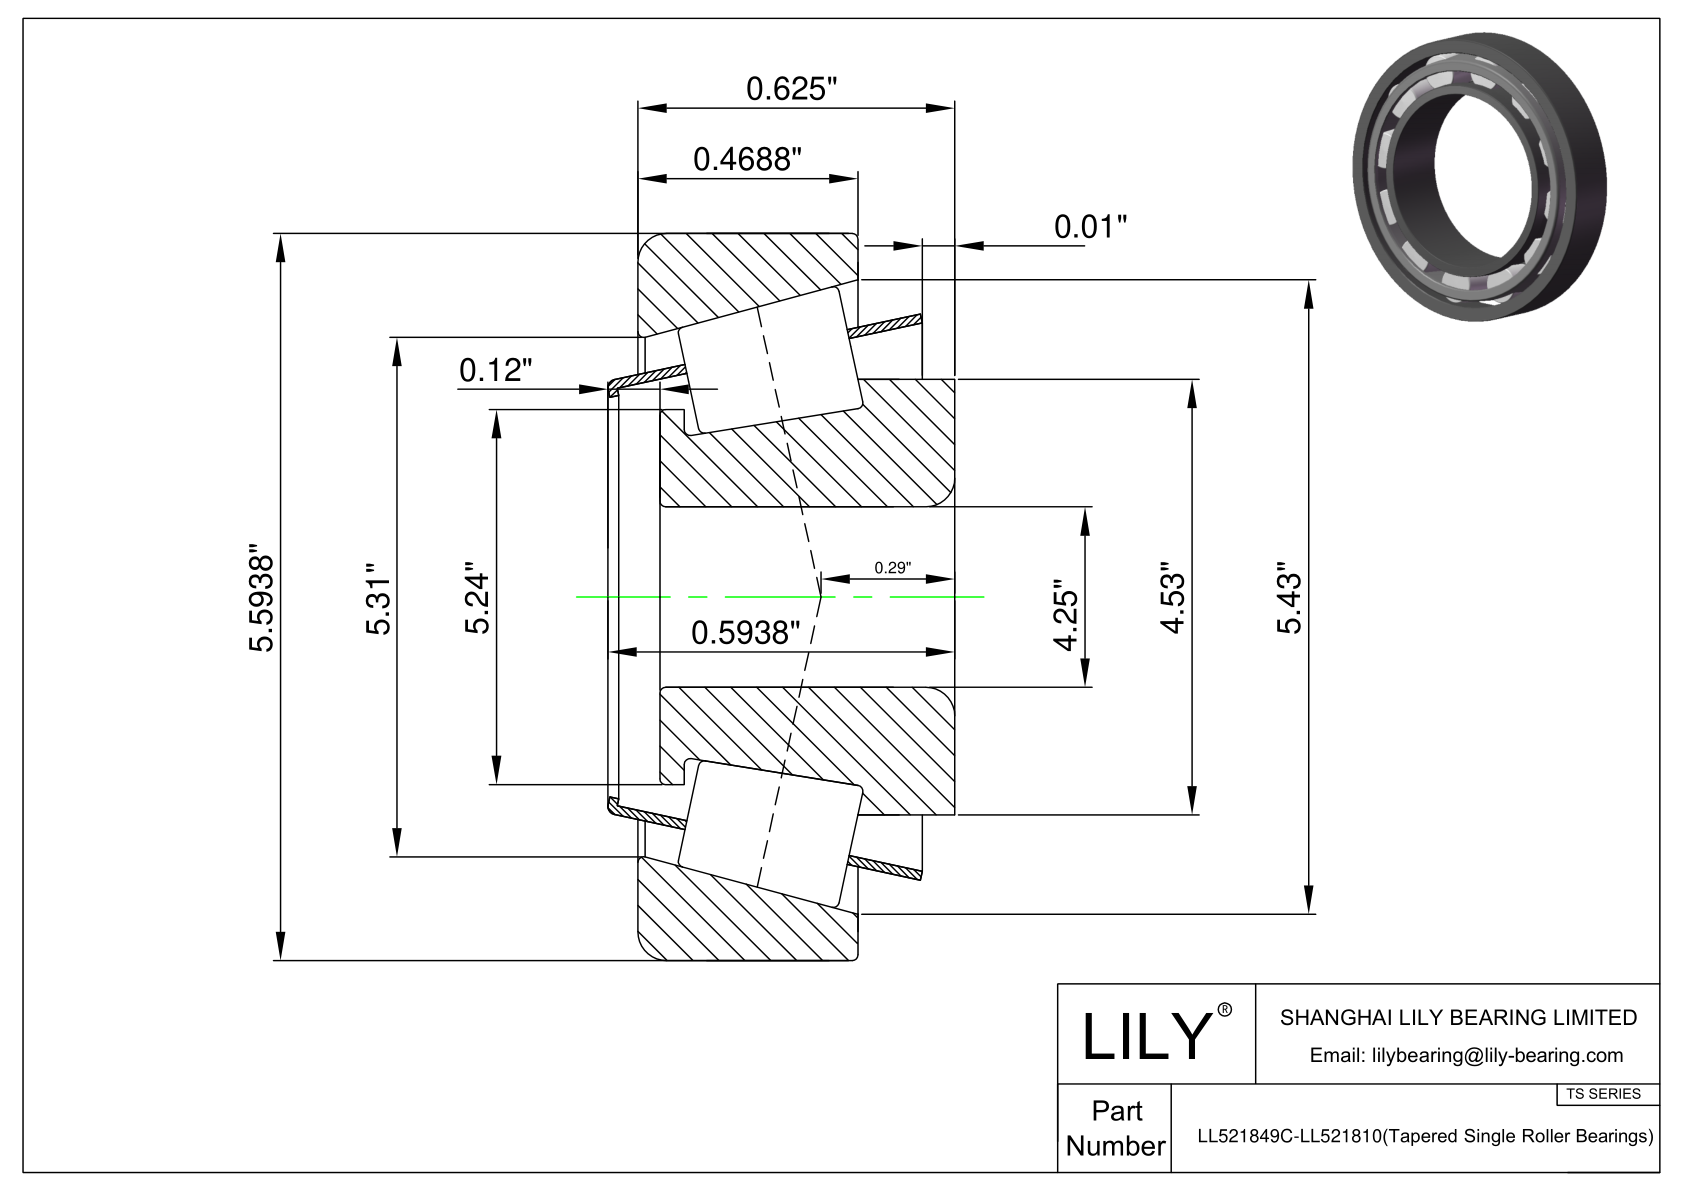 LL521849C-LL521810 TS系列(圆锥单滚子轴承)(英制) CAD图形